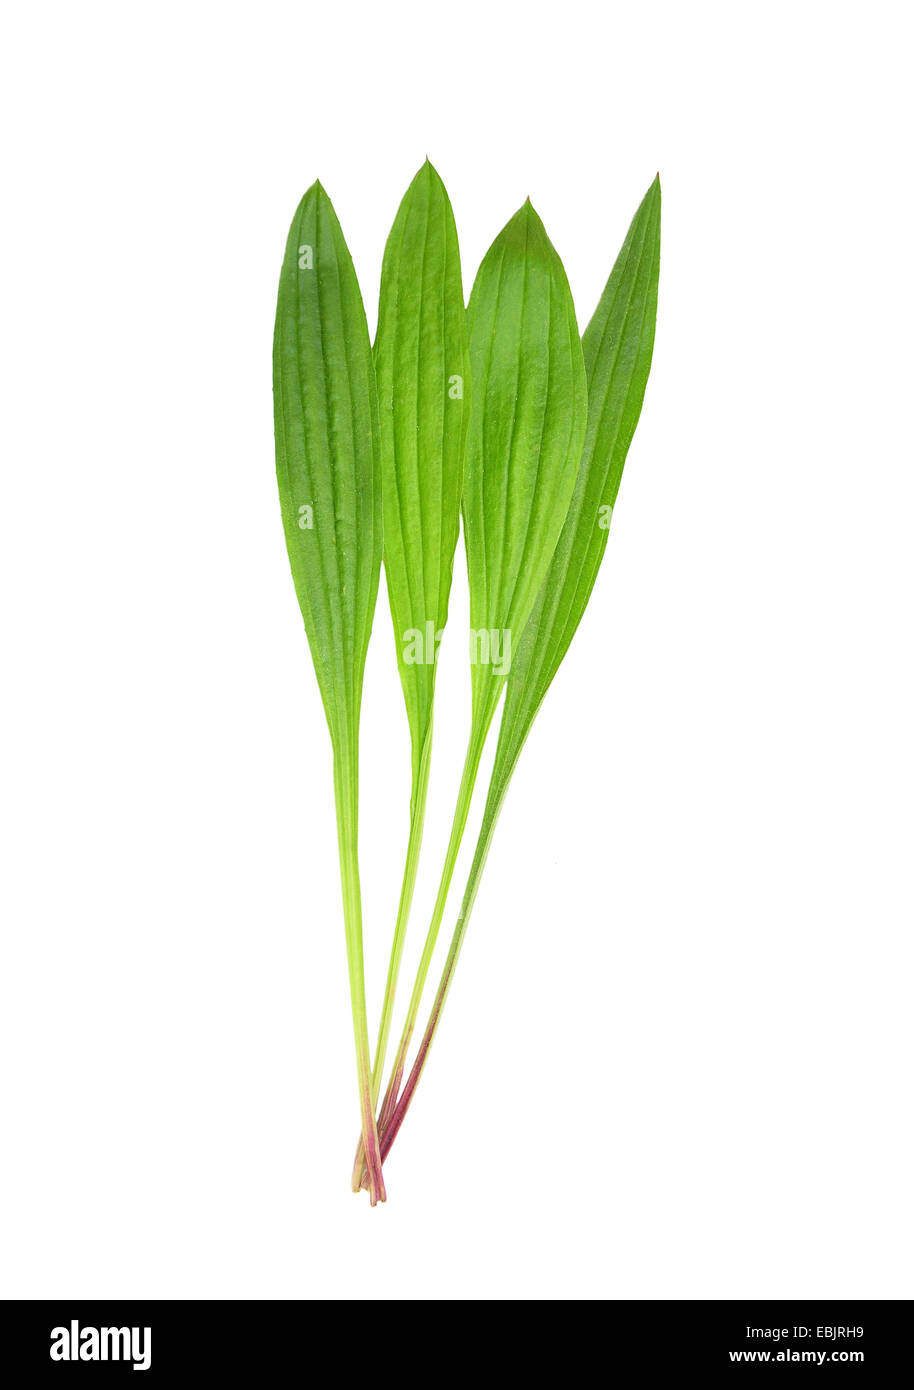 English plantain (Plantago lanceolata) Stock Photo